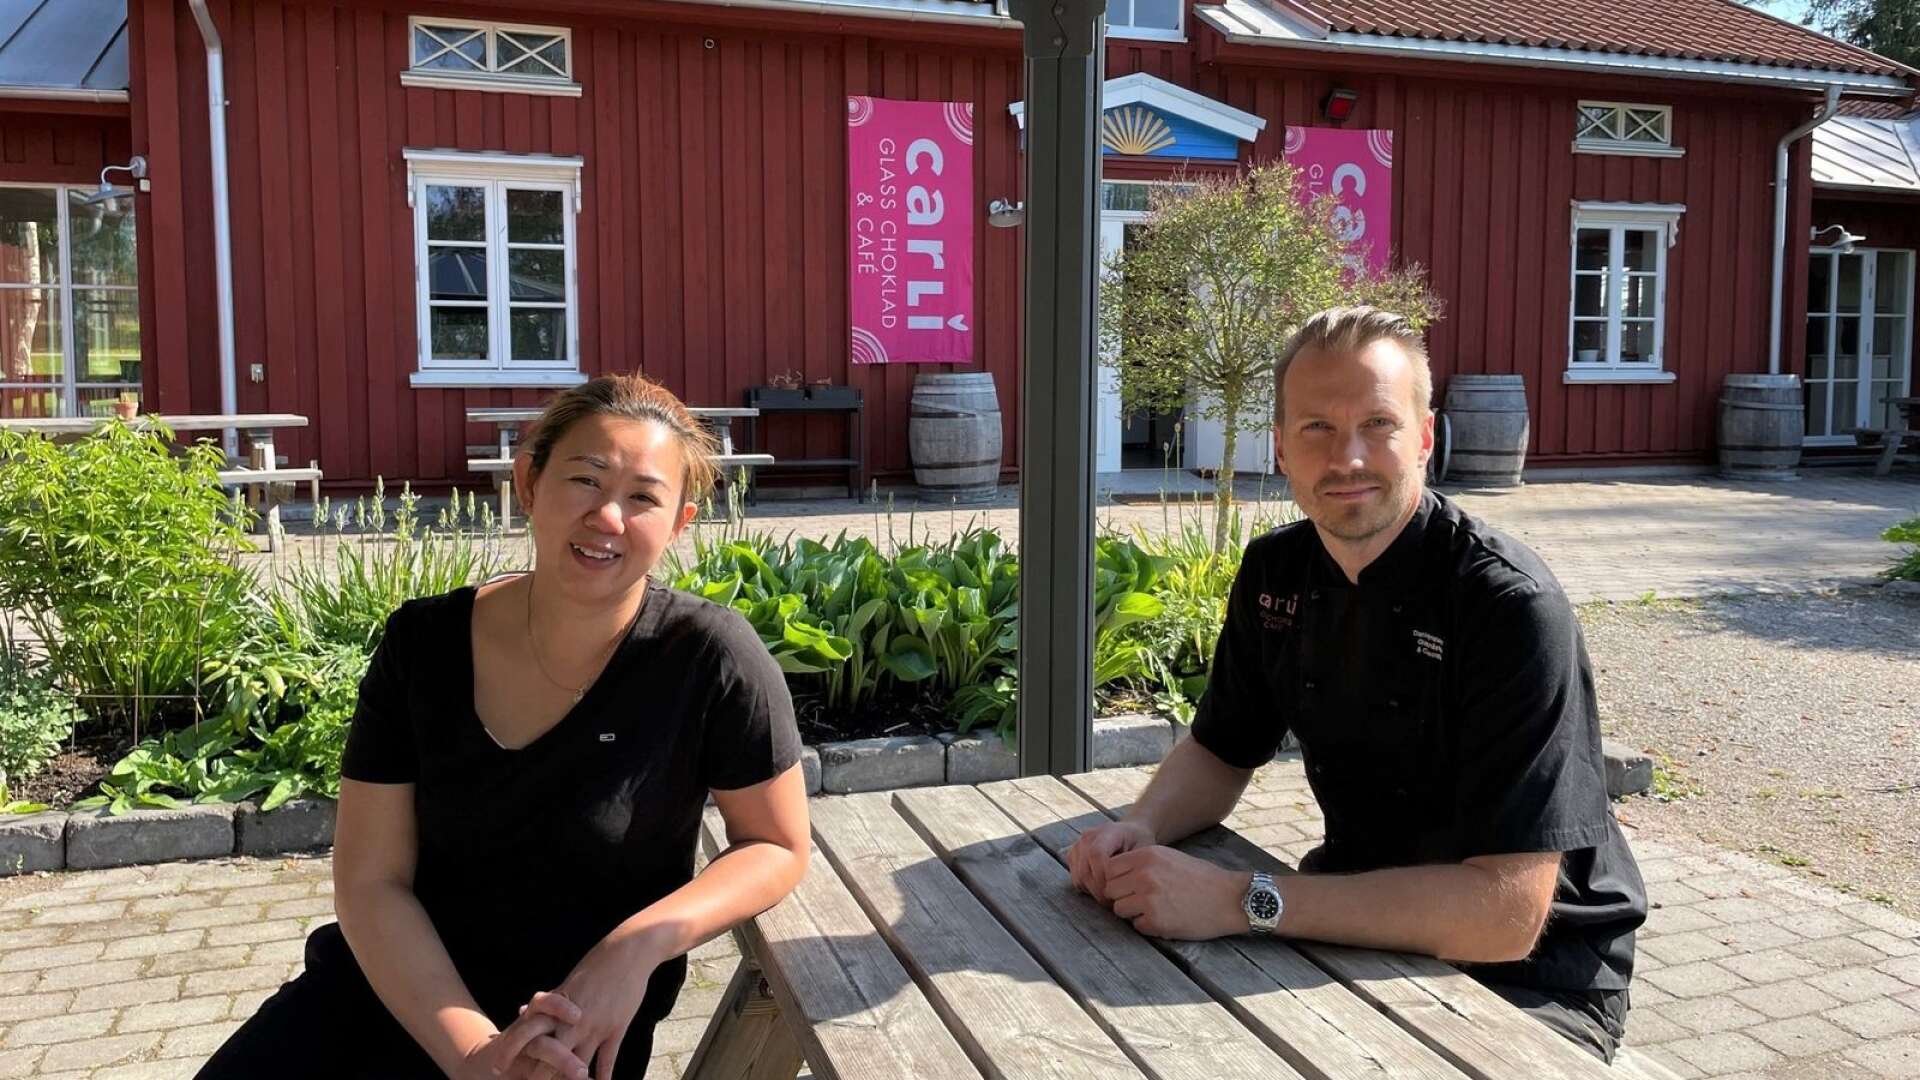 Daniel Kristensen och Li Thi Dam äger det välkända Carli Café i Karlstad sen ett drygt år tillbaka. Nu öppnar de sommarcafé på Sågudden.